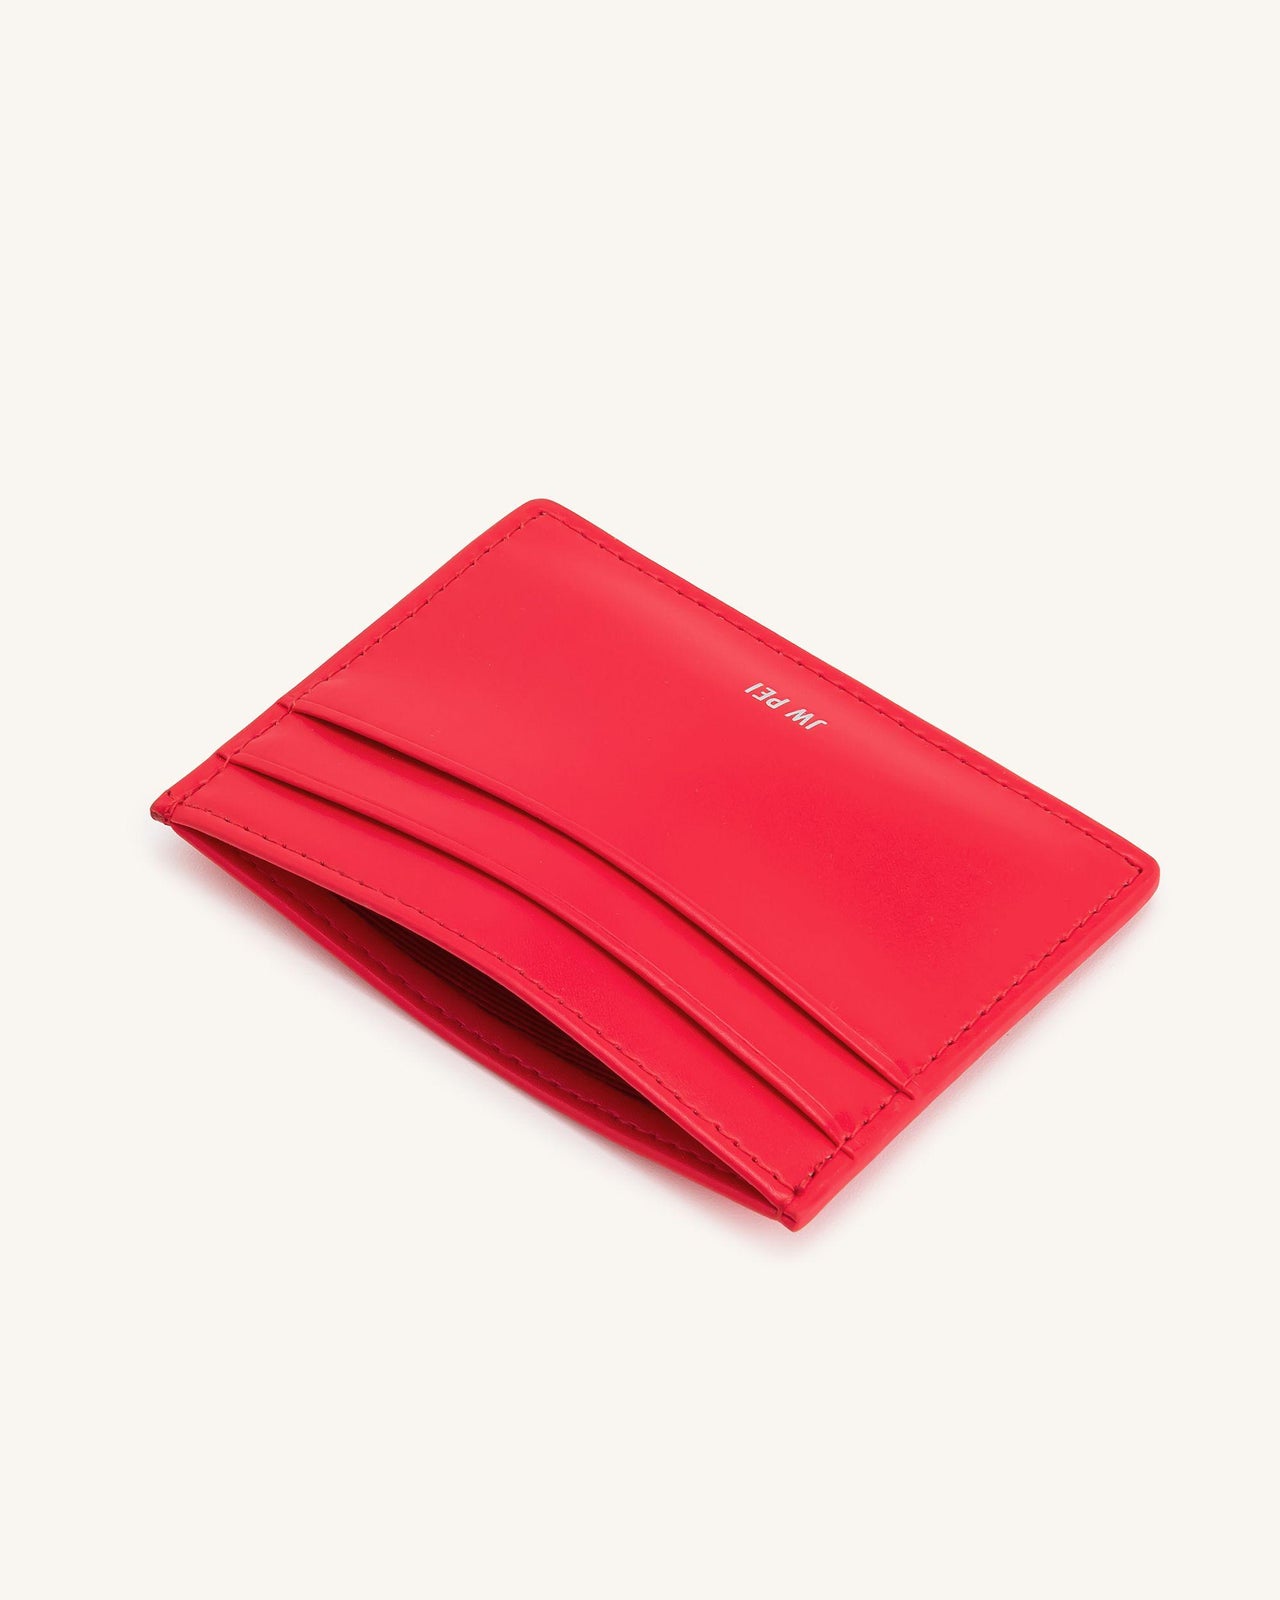 Le porte-cartes - Rouge